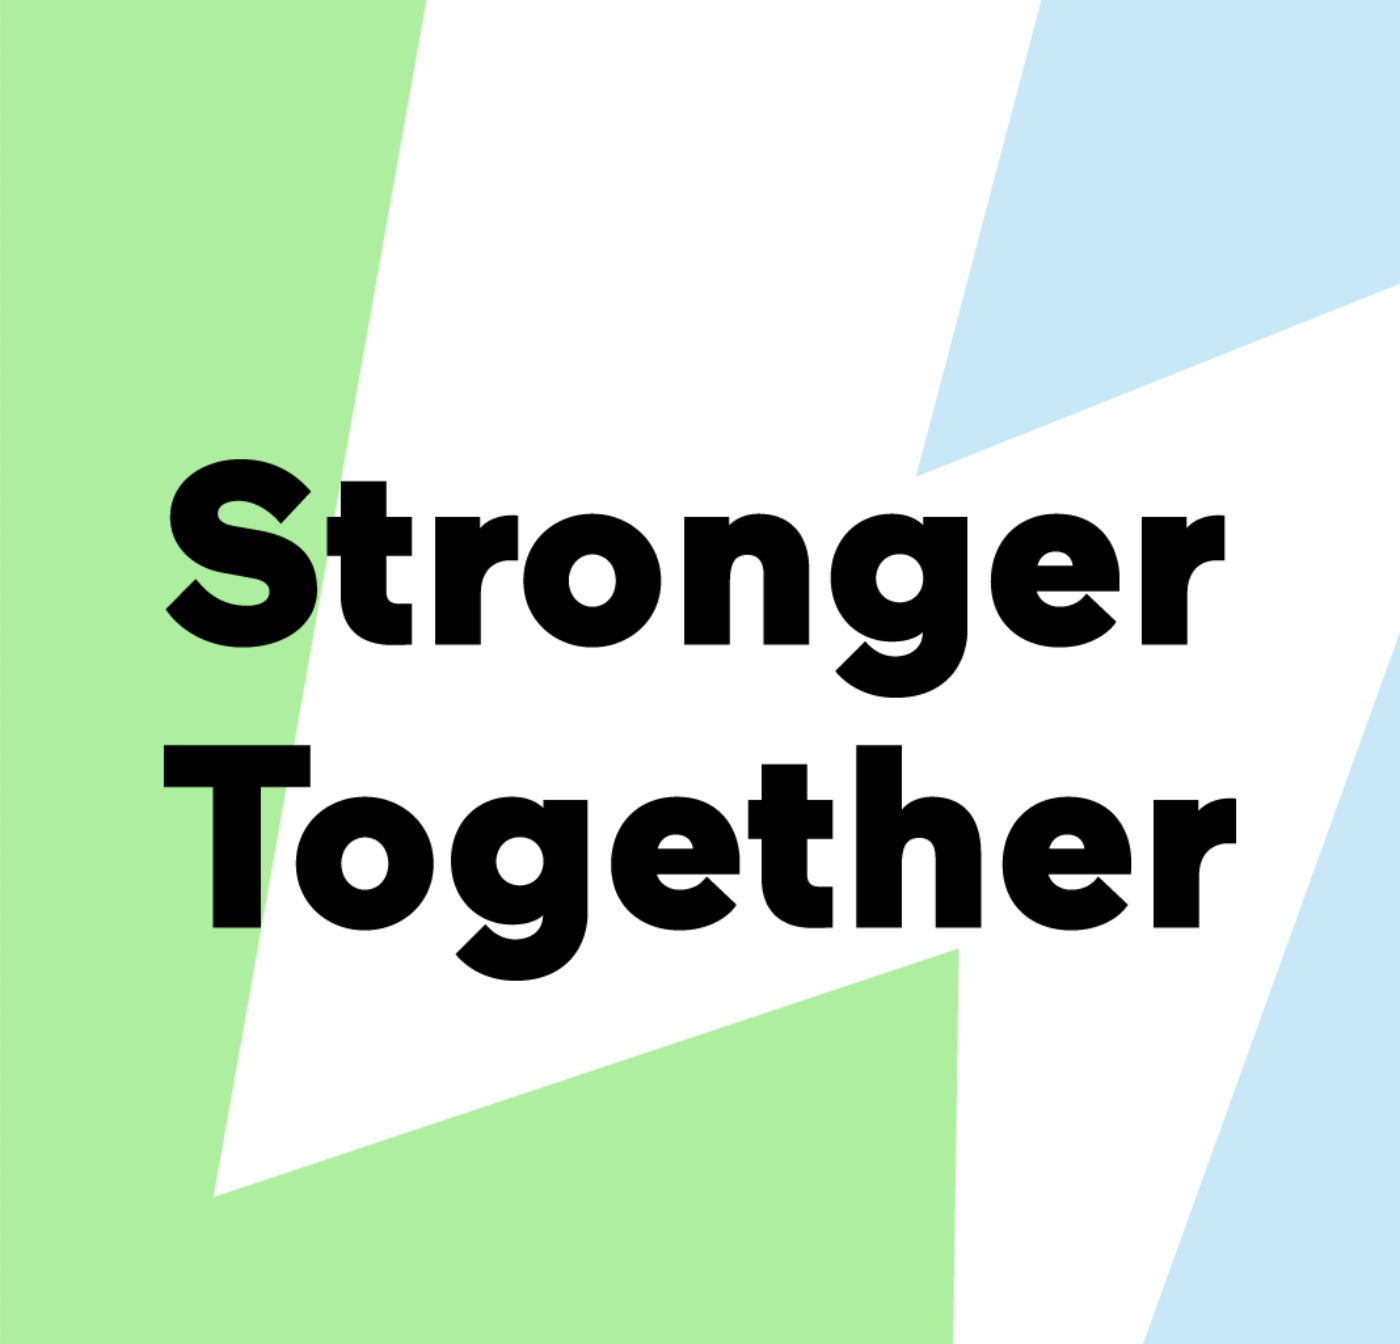 Stronger Together 